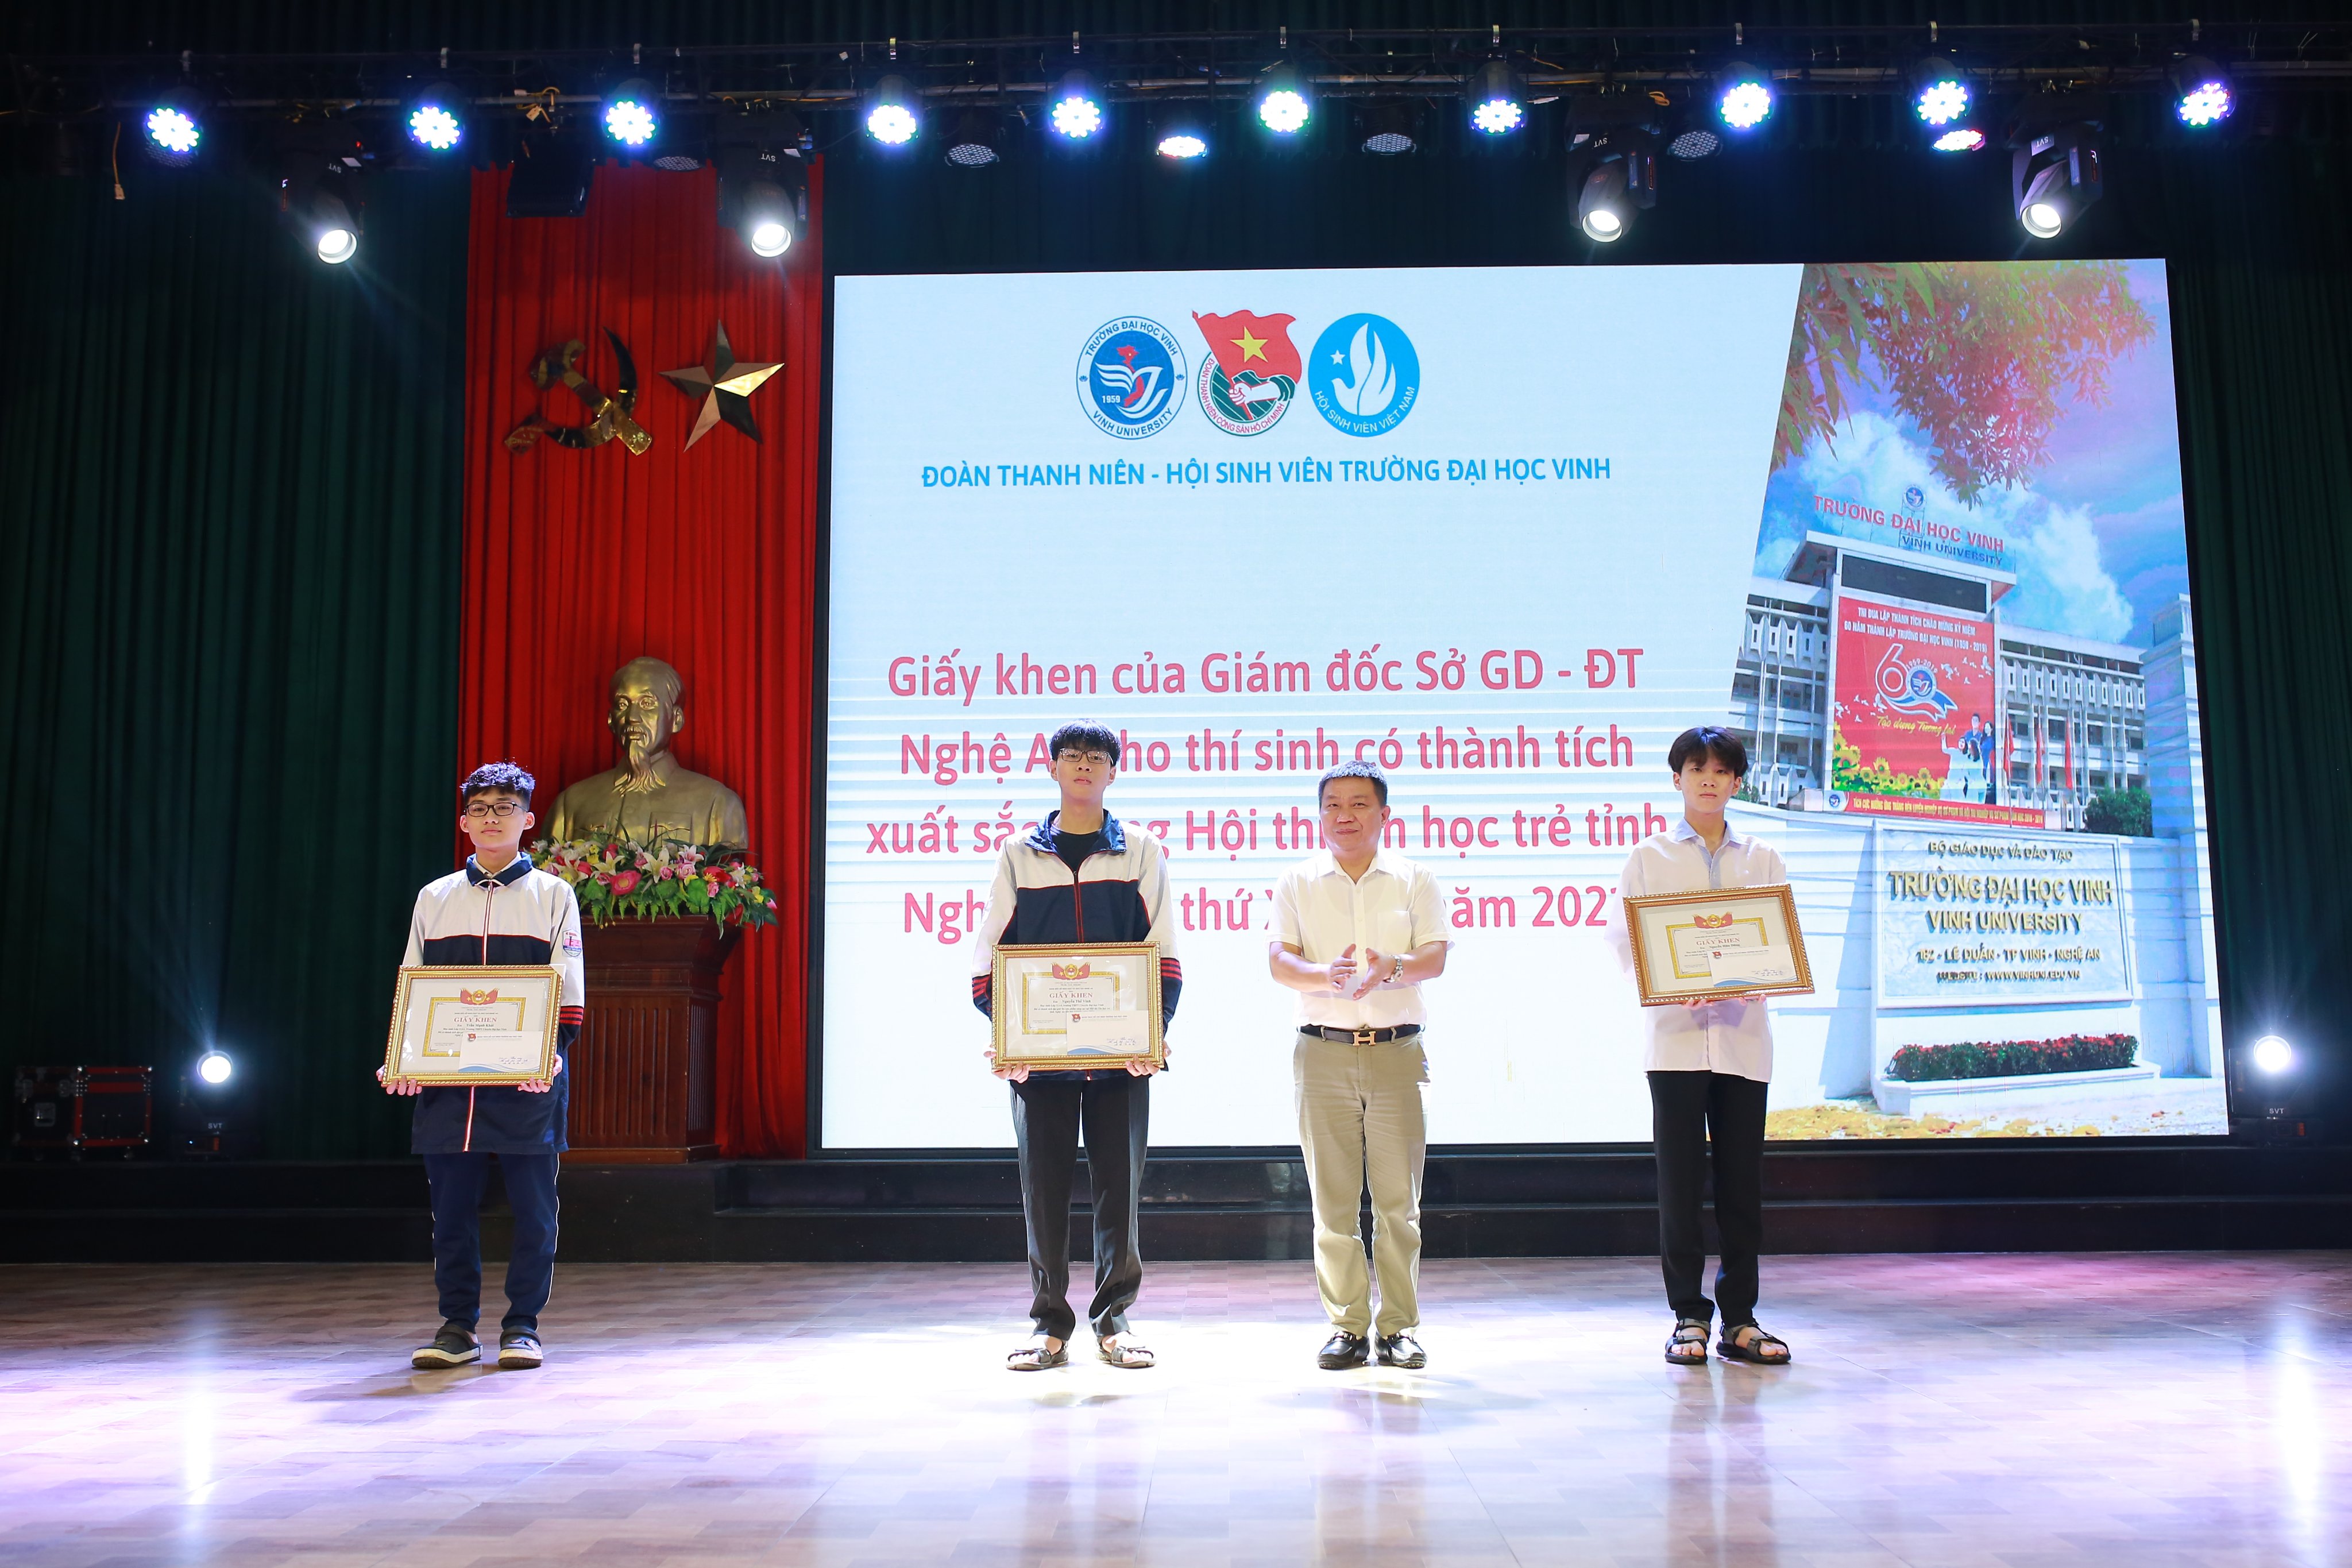 Học sinh Trường Đại học Vinh giành giải cao tại Hội thi "Tin học trẻ" tỉnh Nghệ An năm 2021